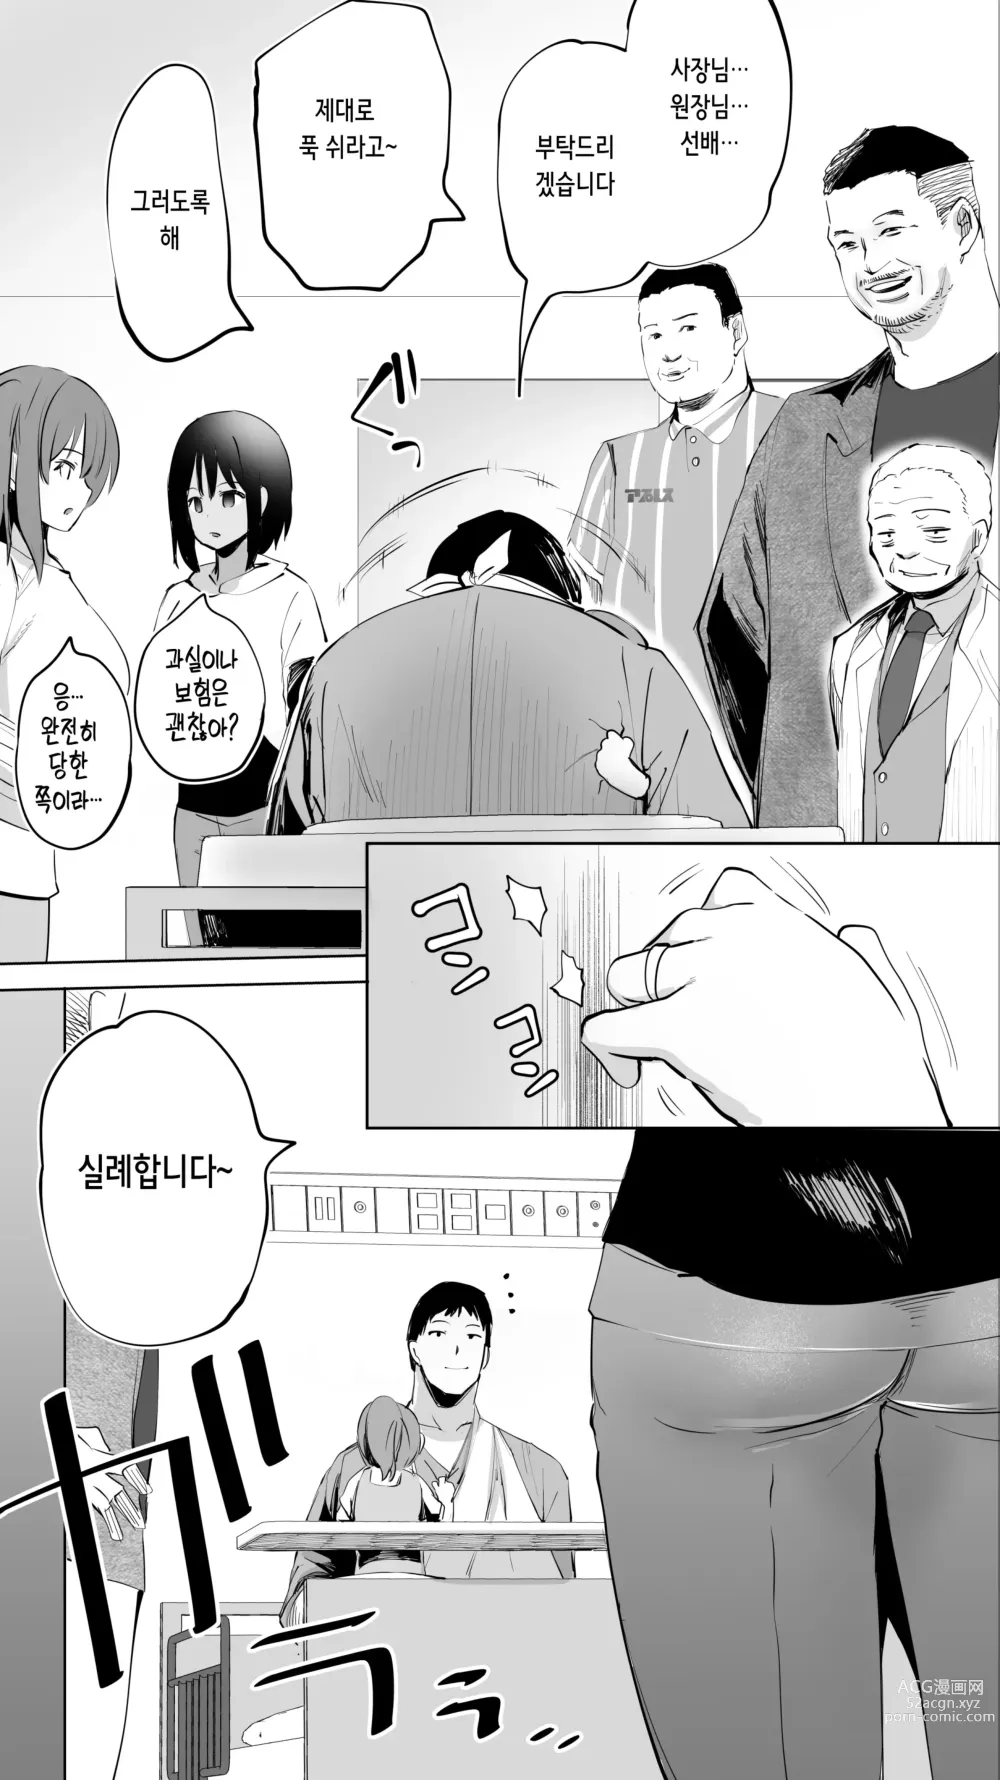 Page 6 of doujinshi 터전의 섹프 「동급생 간호사 K」